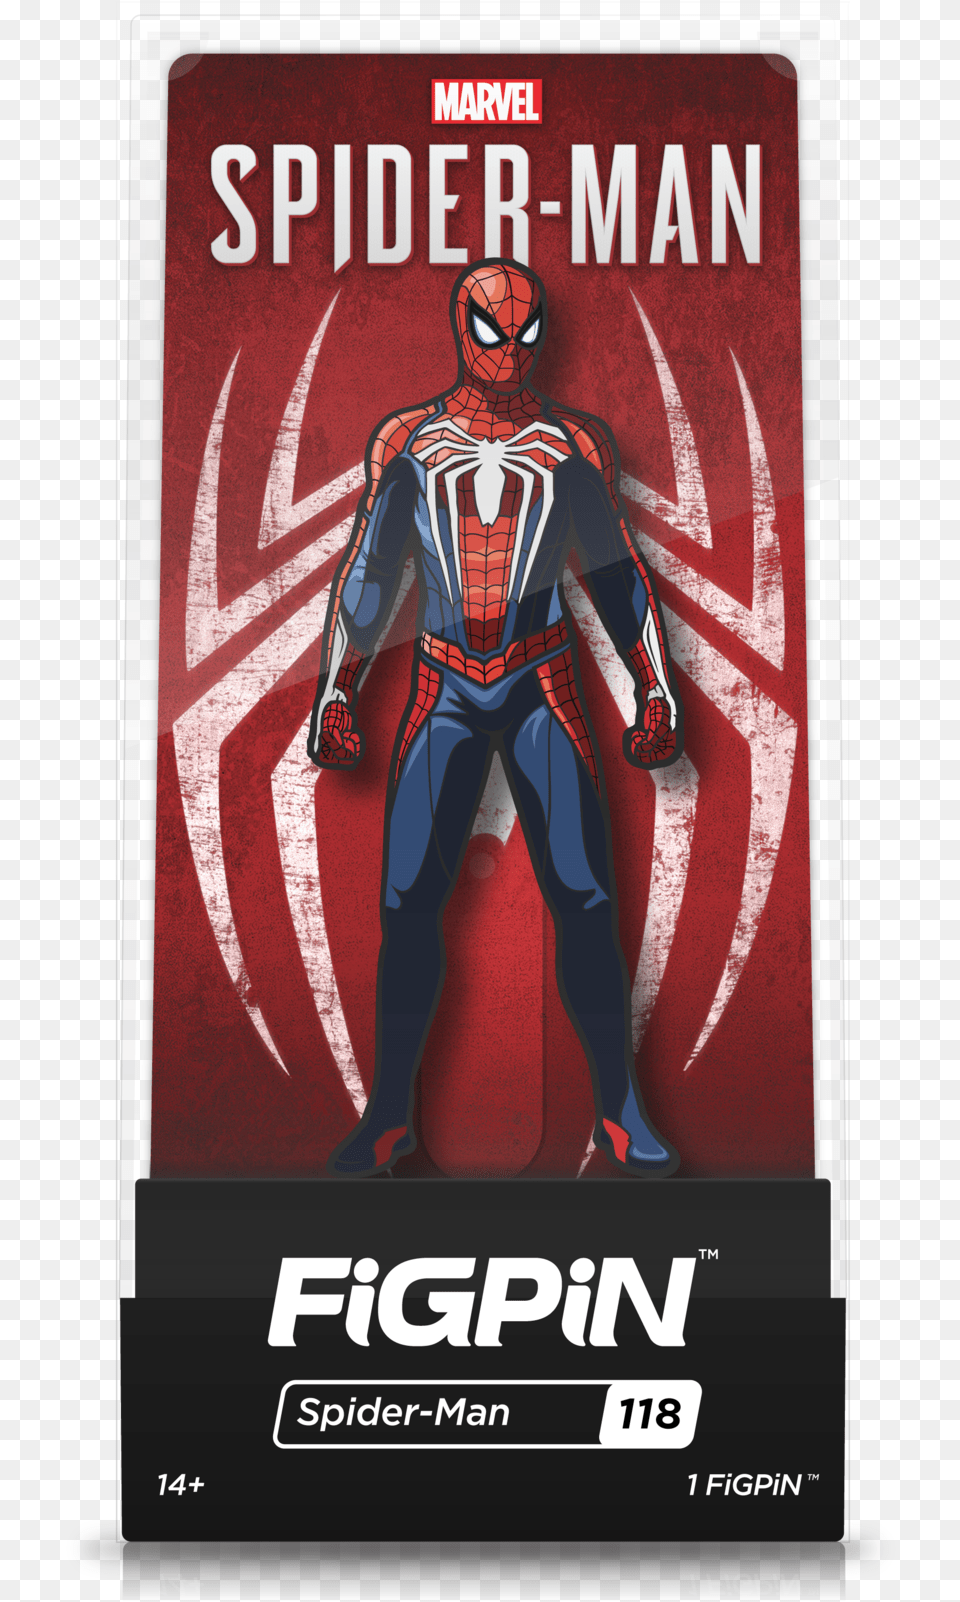 Marvel S Spider Man Hostile Takeover Download Figpin Spider Man, Advertisement, Poster, Book, Publication Free Transparent Png